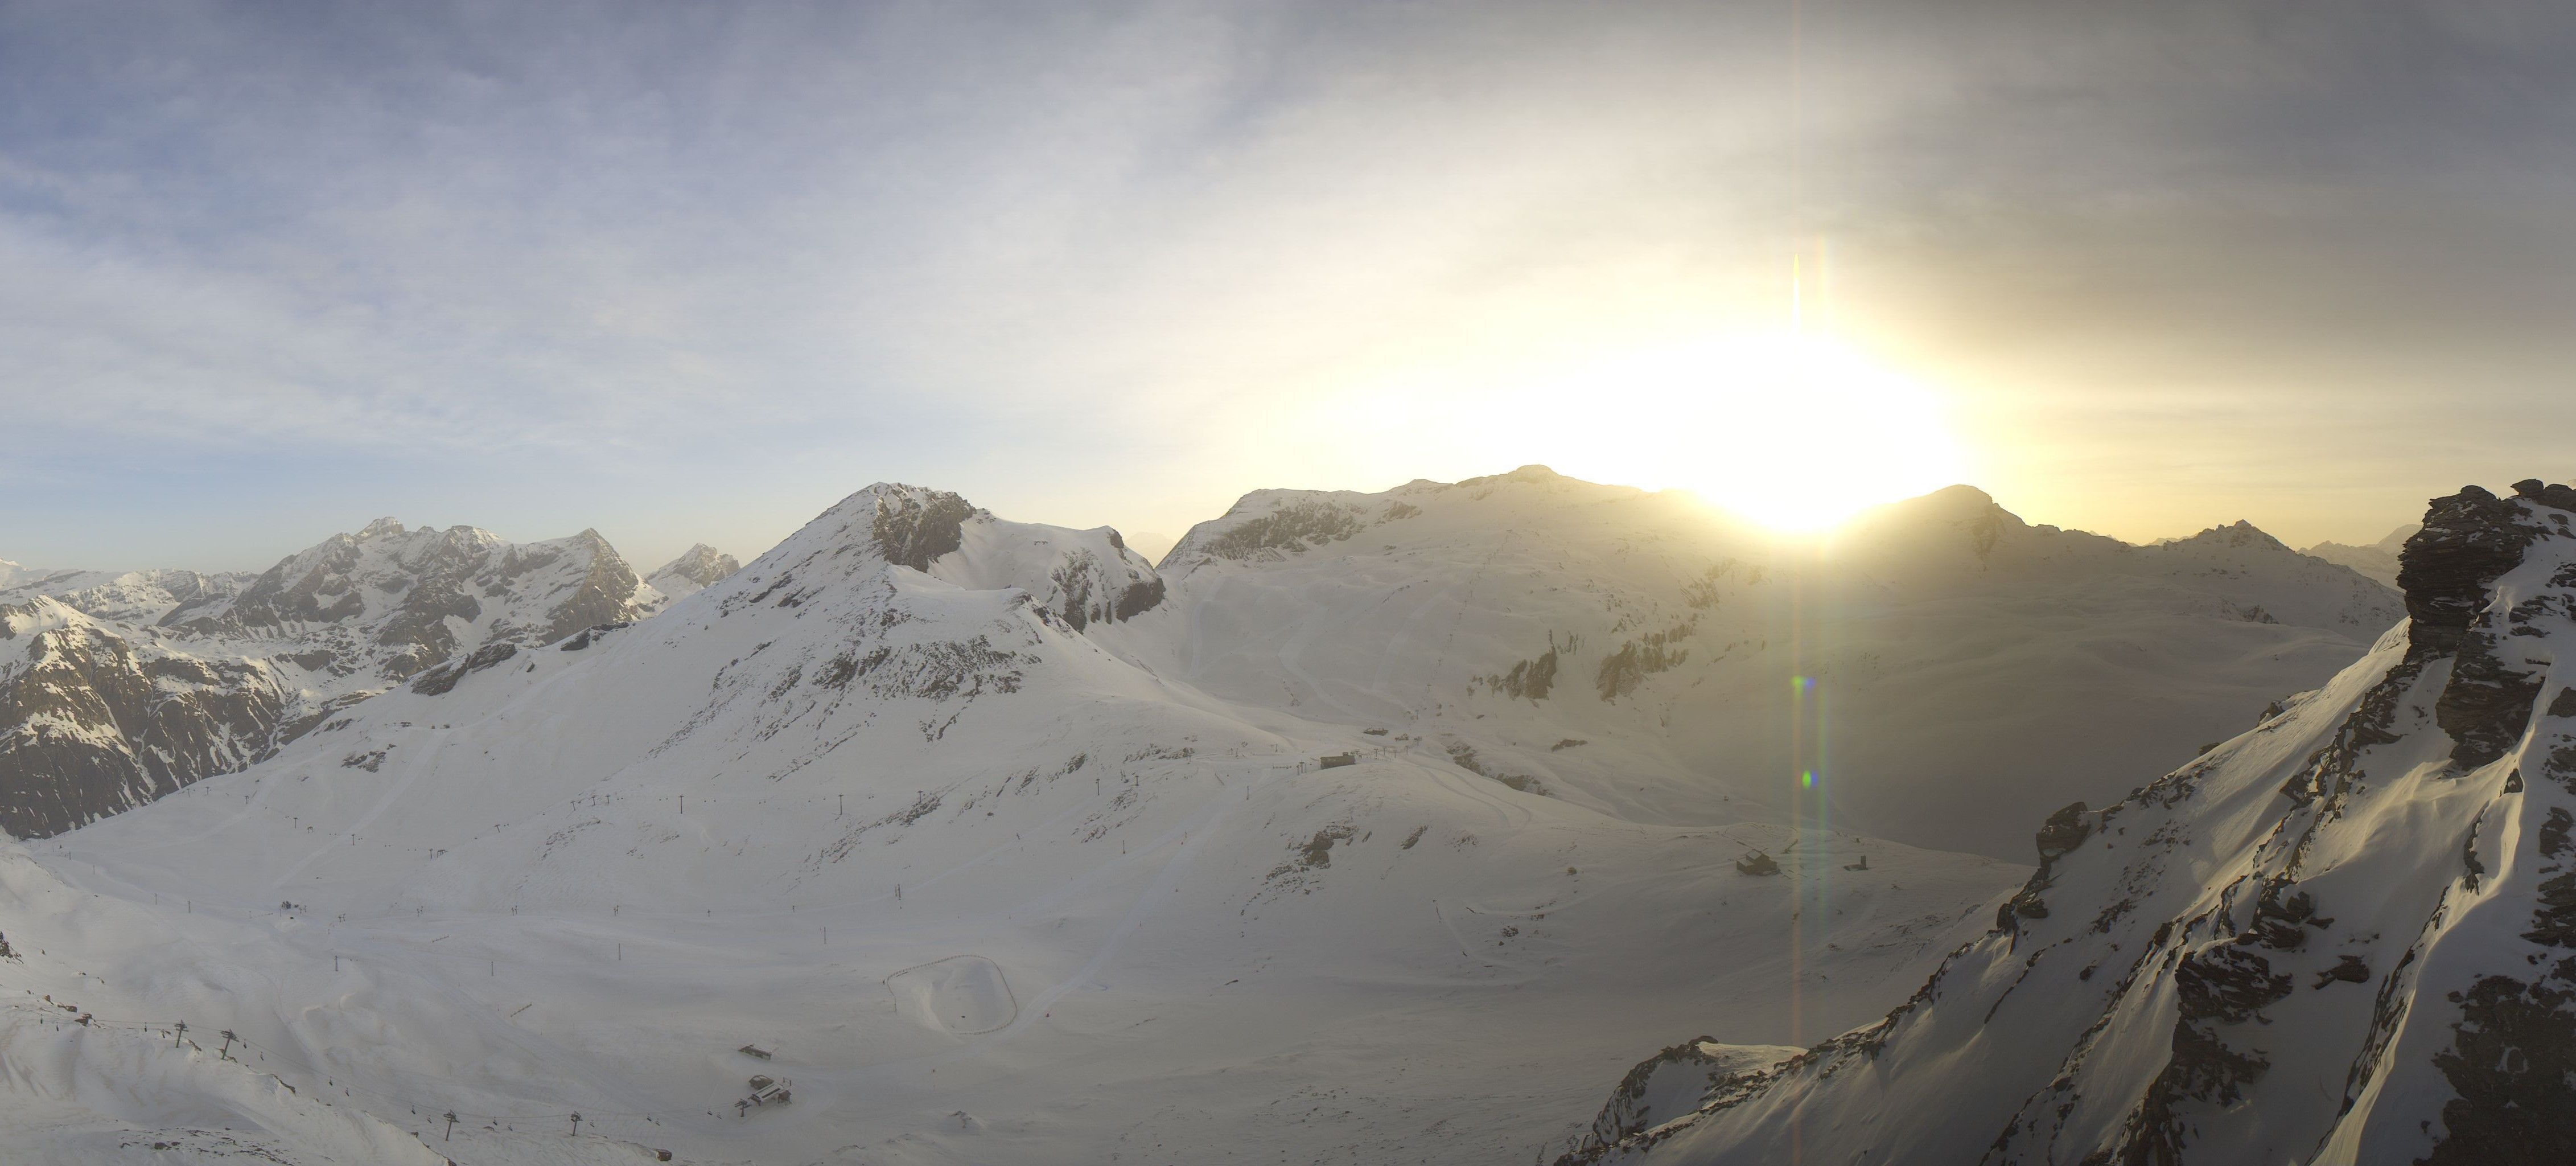 Zonnige ochtend in Val d'Isère met nog saharazand in de lucht (roundshot.com)